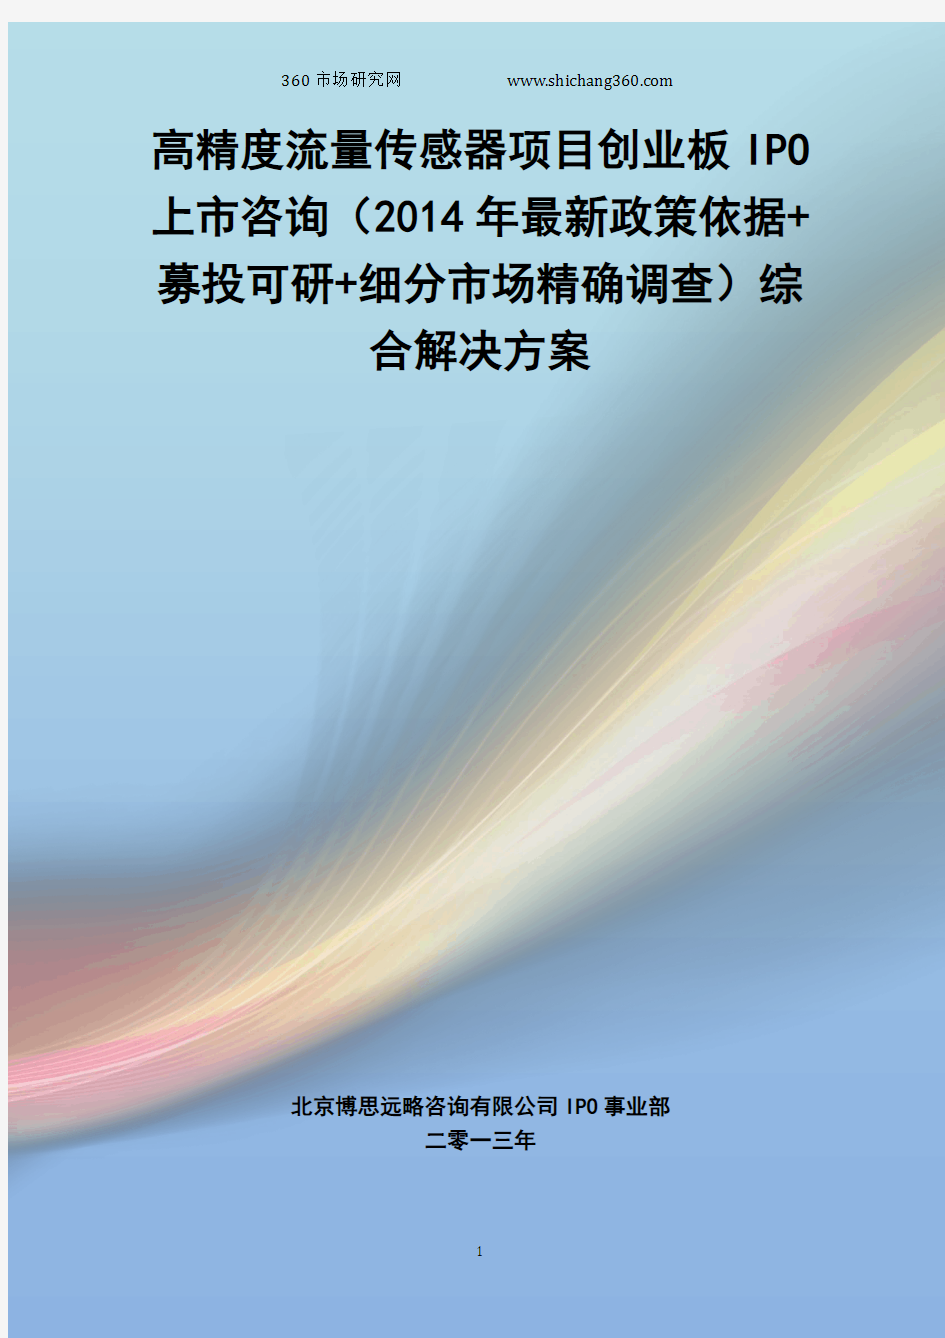 高精度流量传感器IPO上市咨询(2014年最新政策+募投可研+细分市场调查)综合解决方案